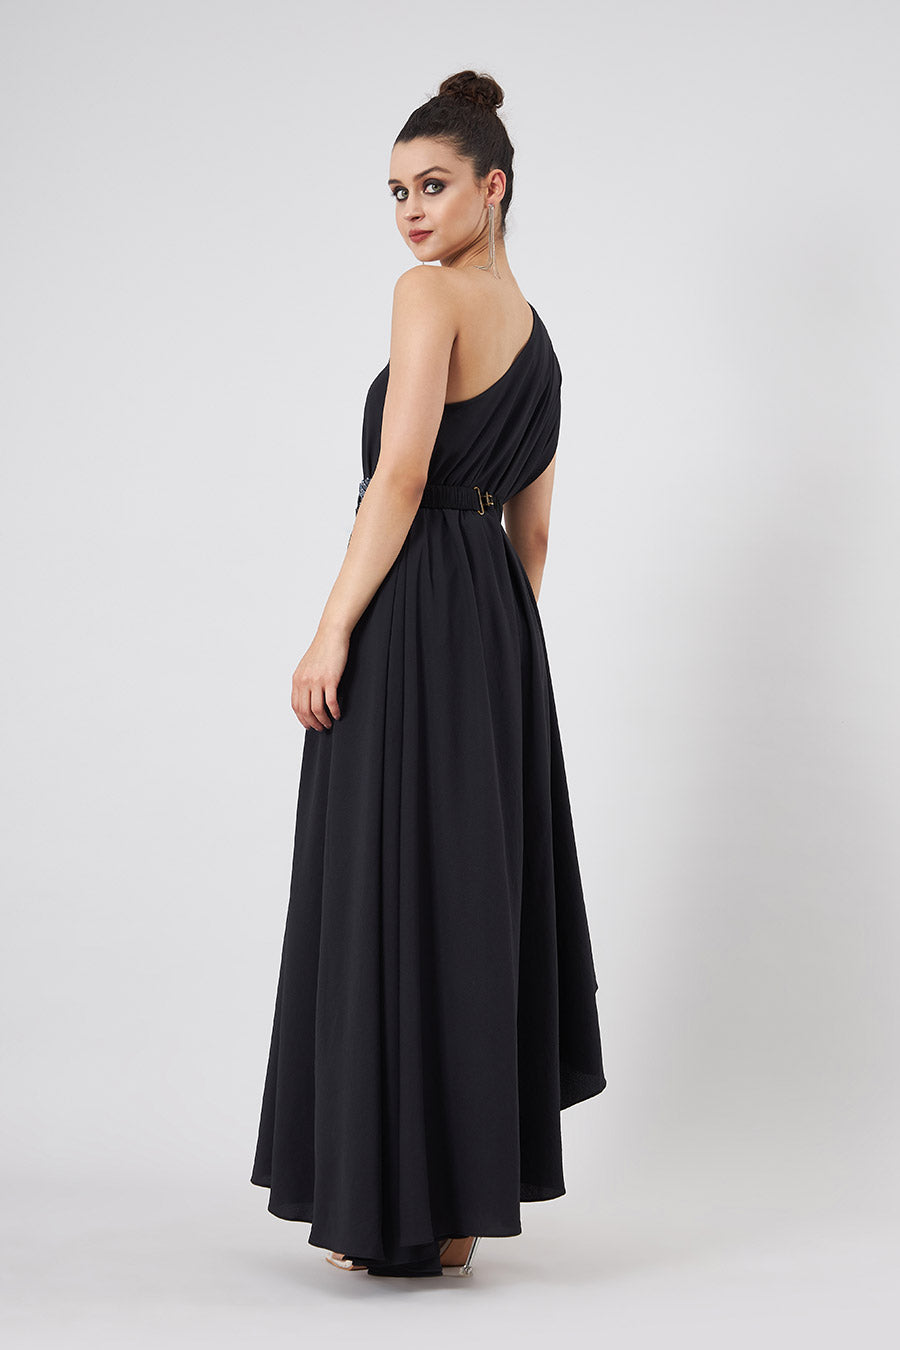 Black Off-Shoulder Dress With Embellished Belt